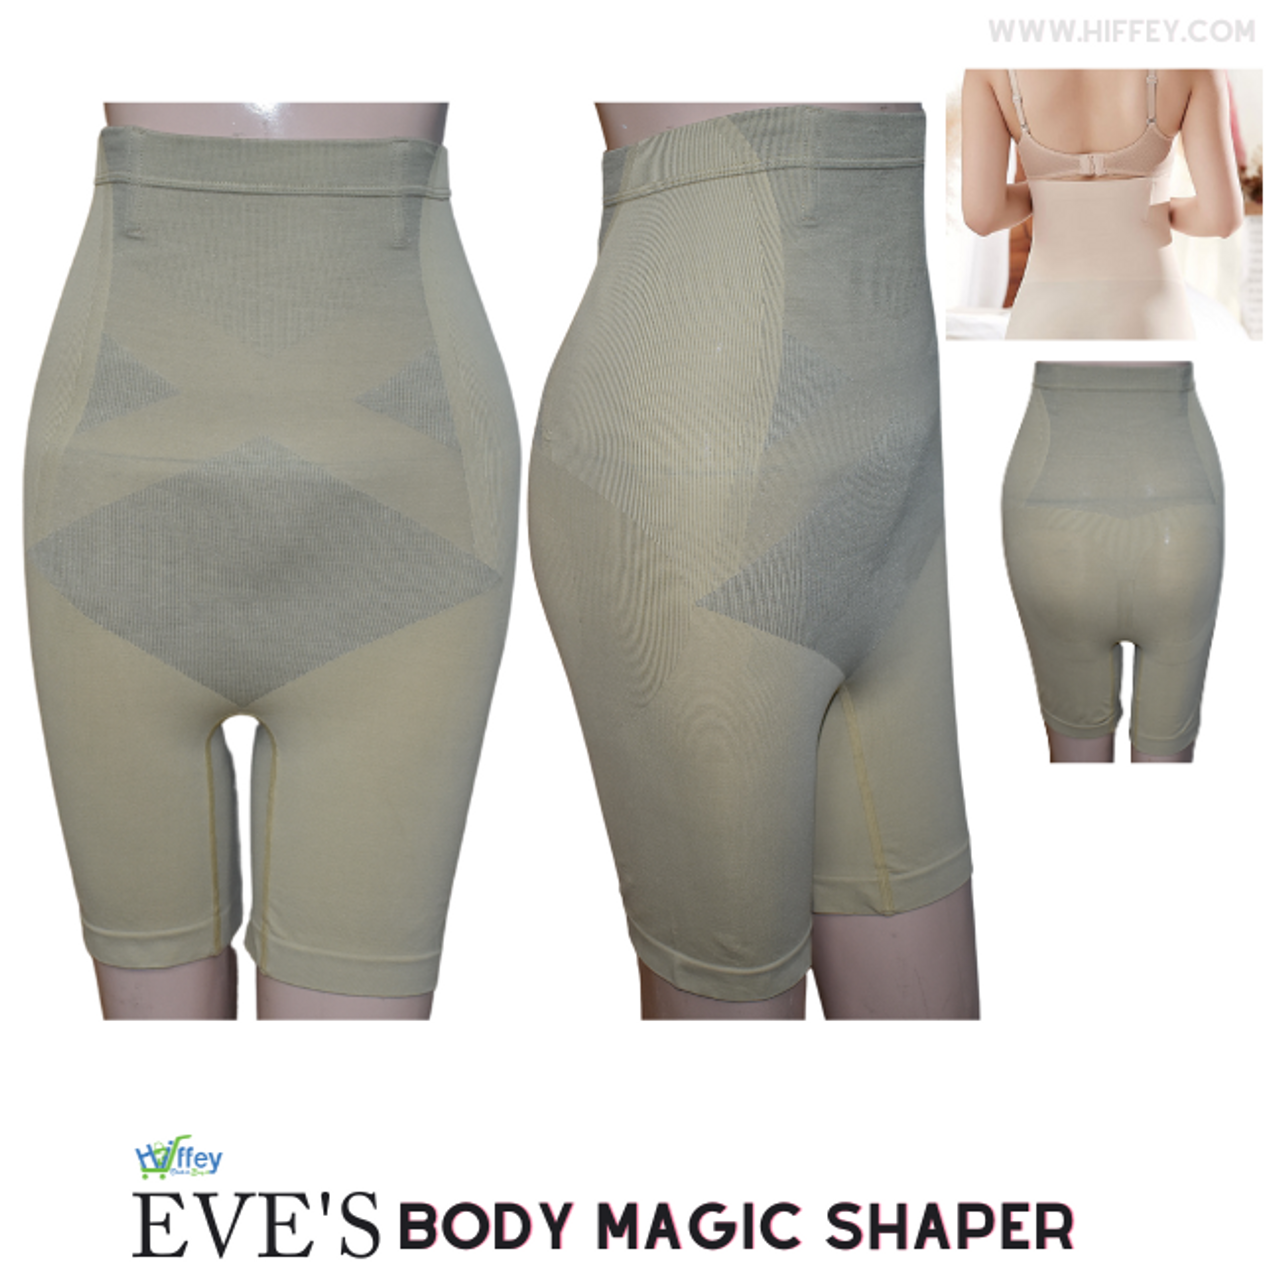 Buy Online Jockey Slimming Light Short Body Shaper for Men & Women at